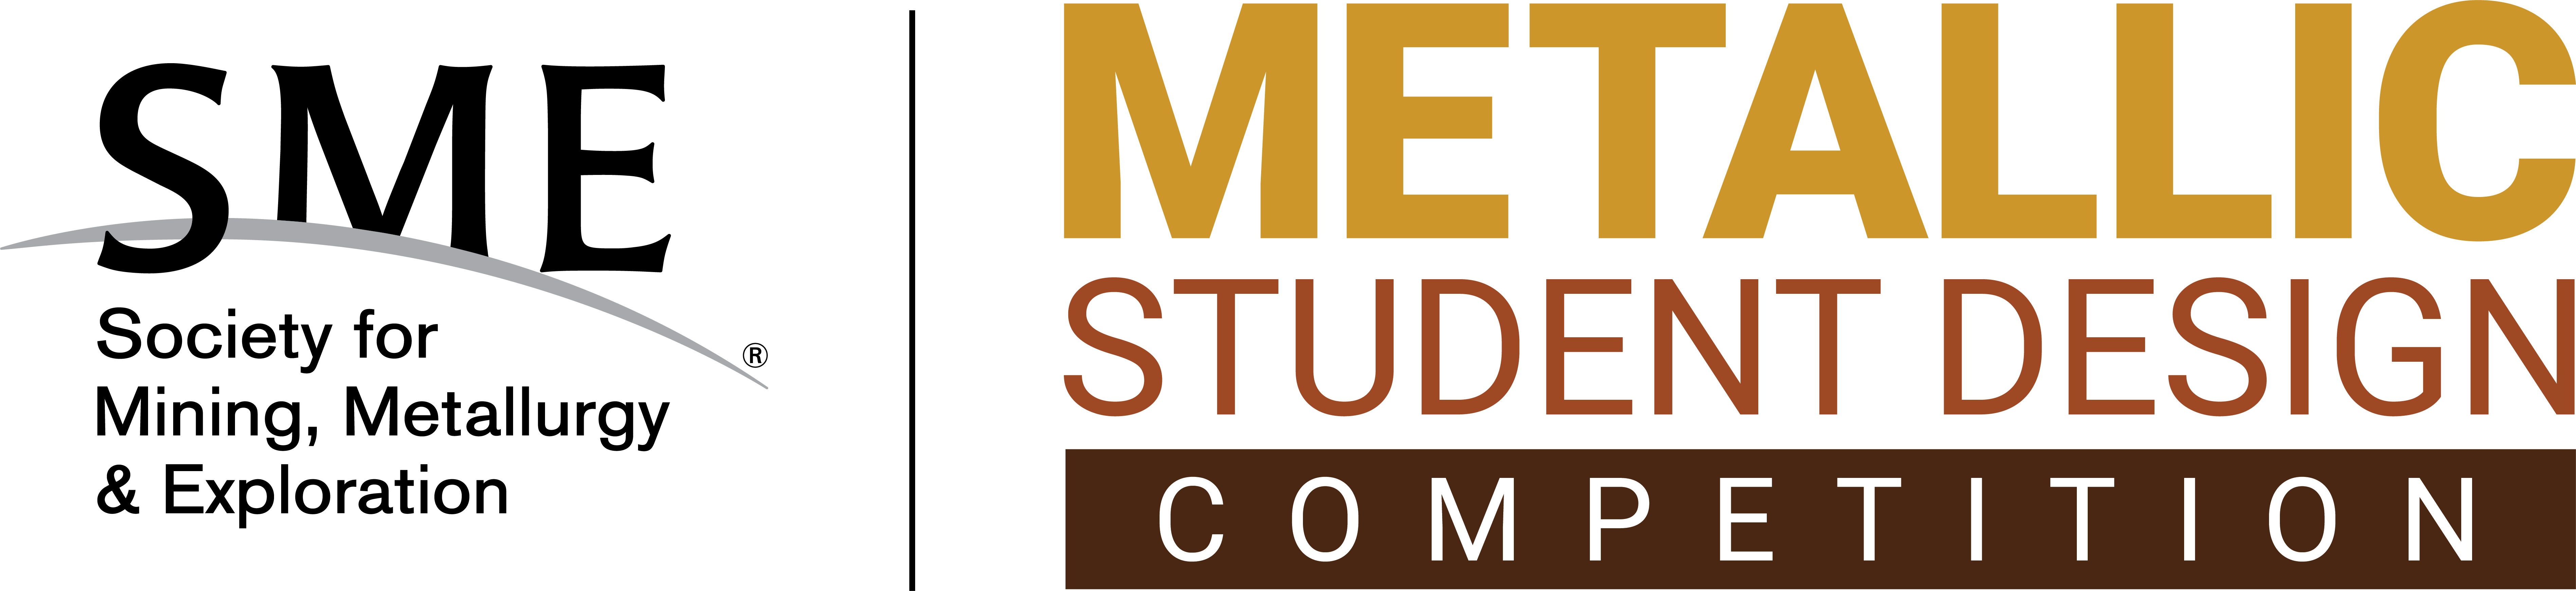 SME-Metallic-Student-Logo.png